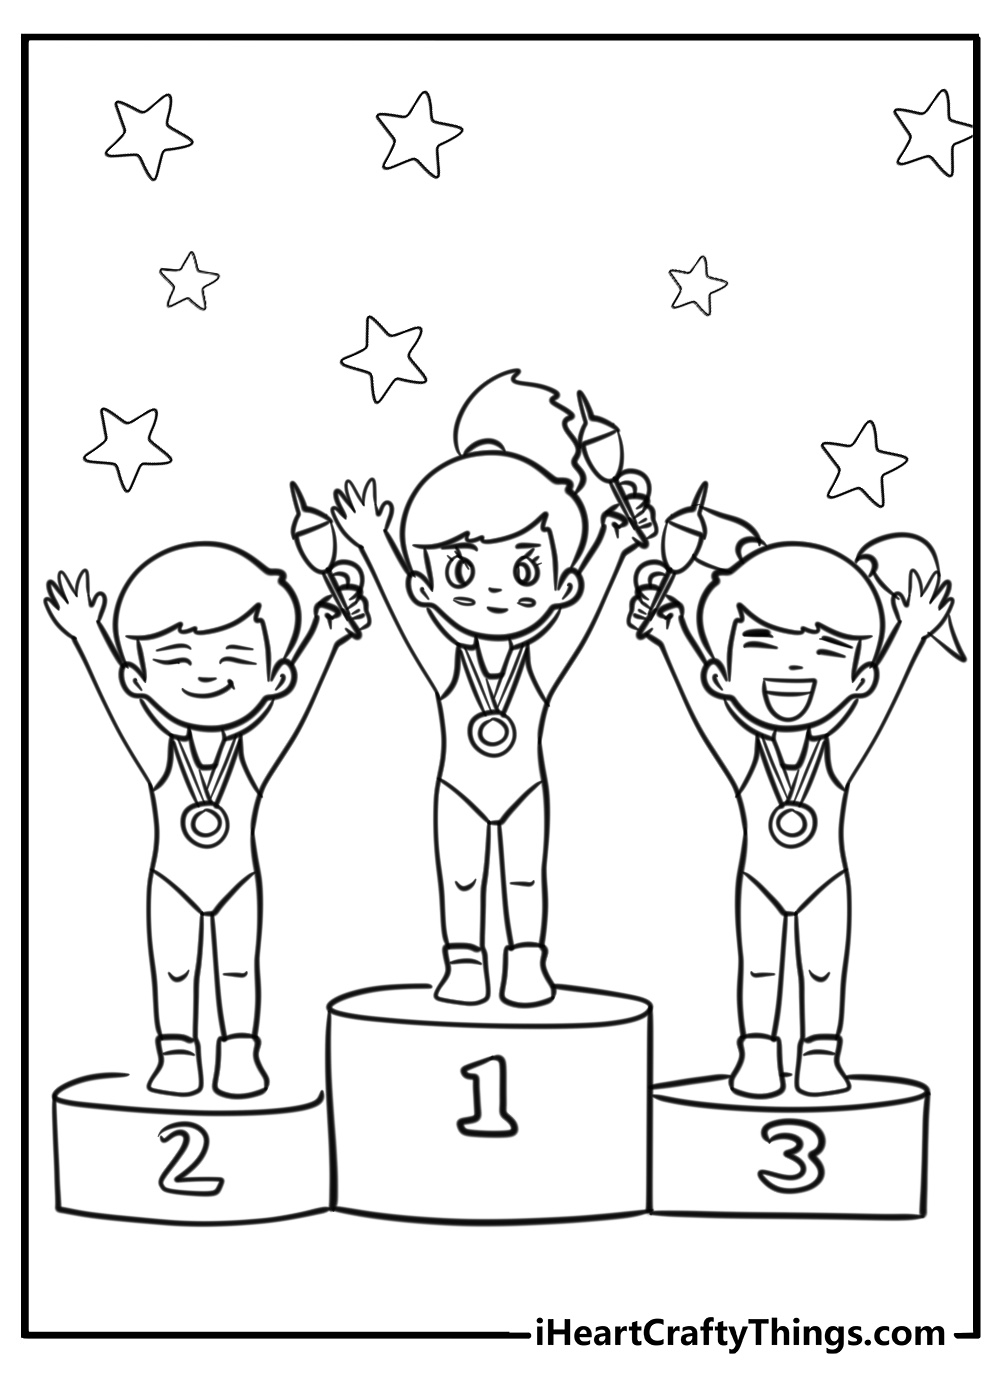 Gymnastics coloring page of cartoon gymnasts award ceremony